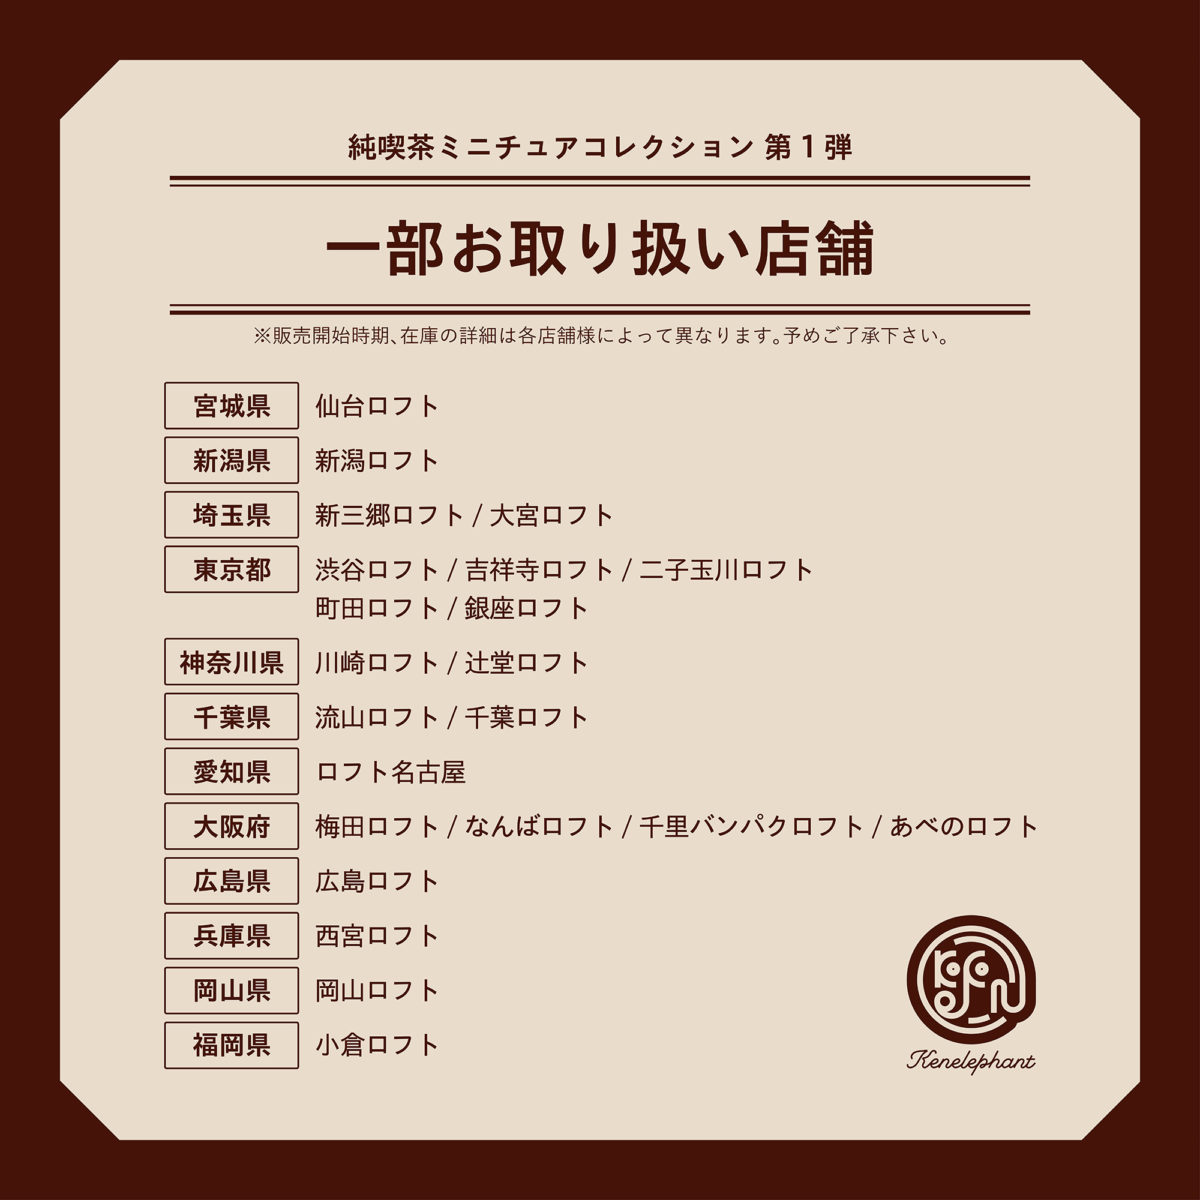 純喫茶 ミニチュアコレクション | Kenelephant(ケンエレファント) — フィギュアメーカー